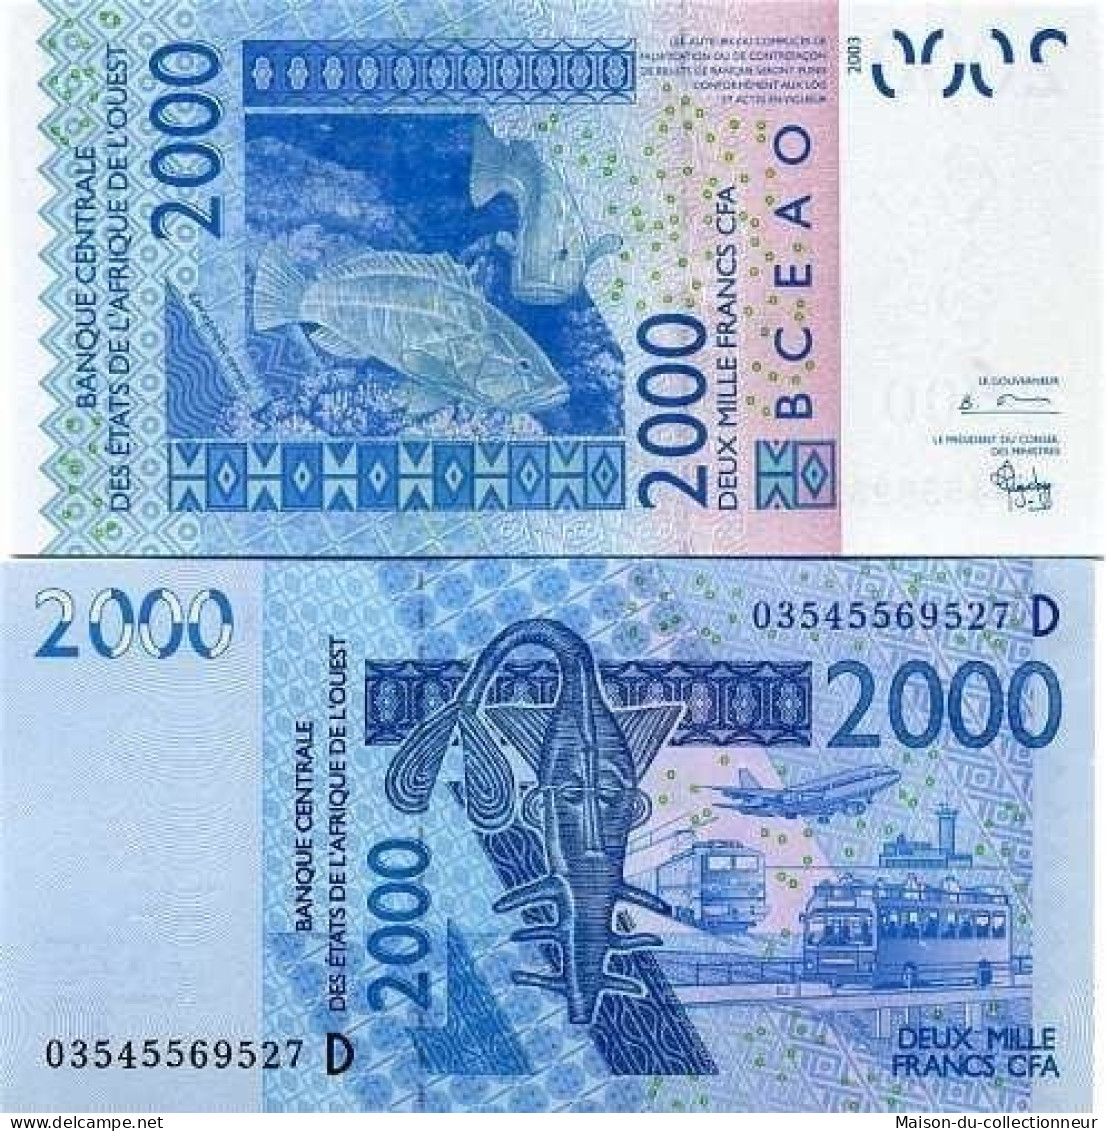 Billets Collection Afrique De L'ouest Mali Pk N° 416 - 2000 Francs - Malí